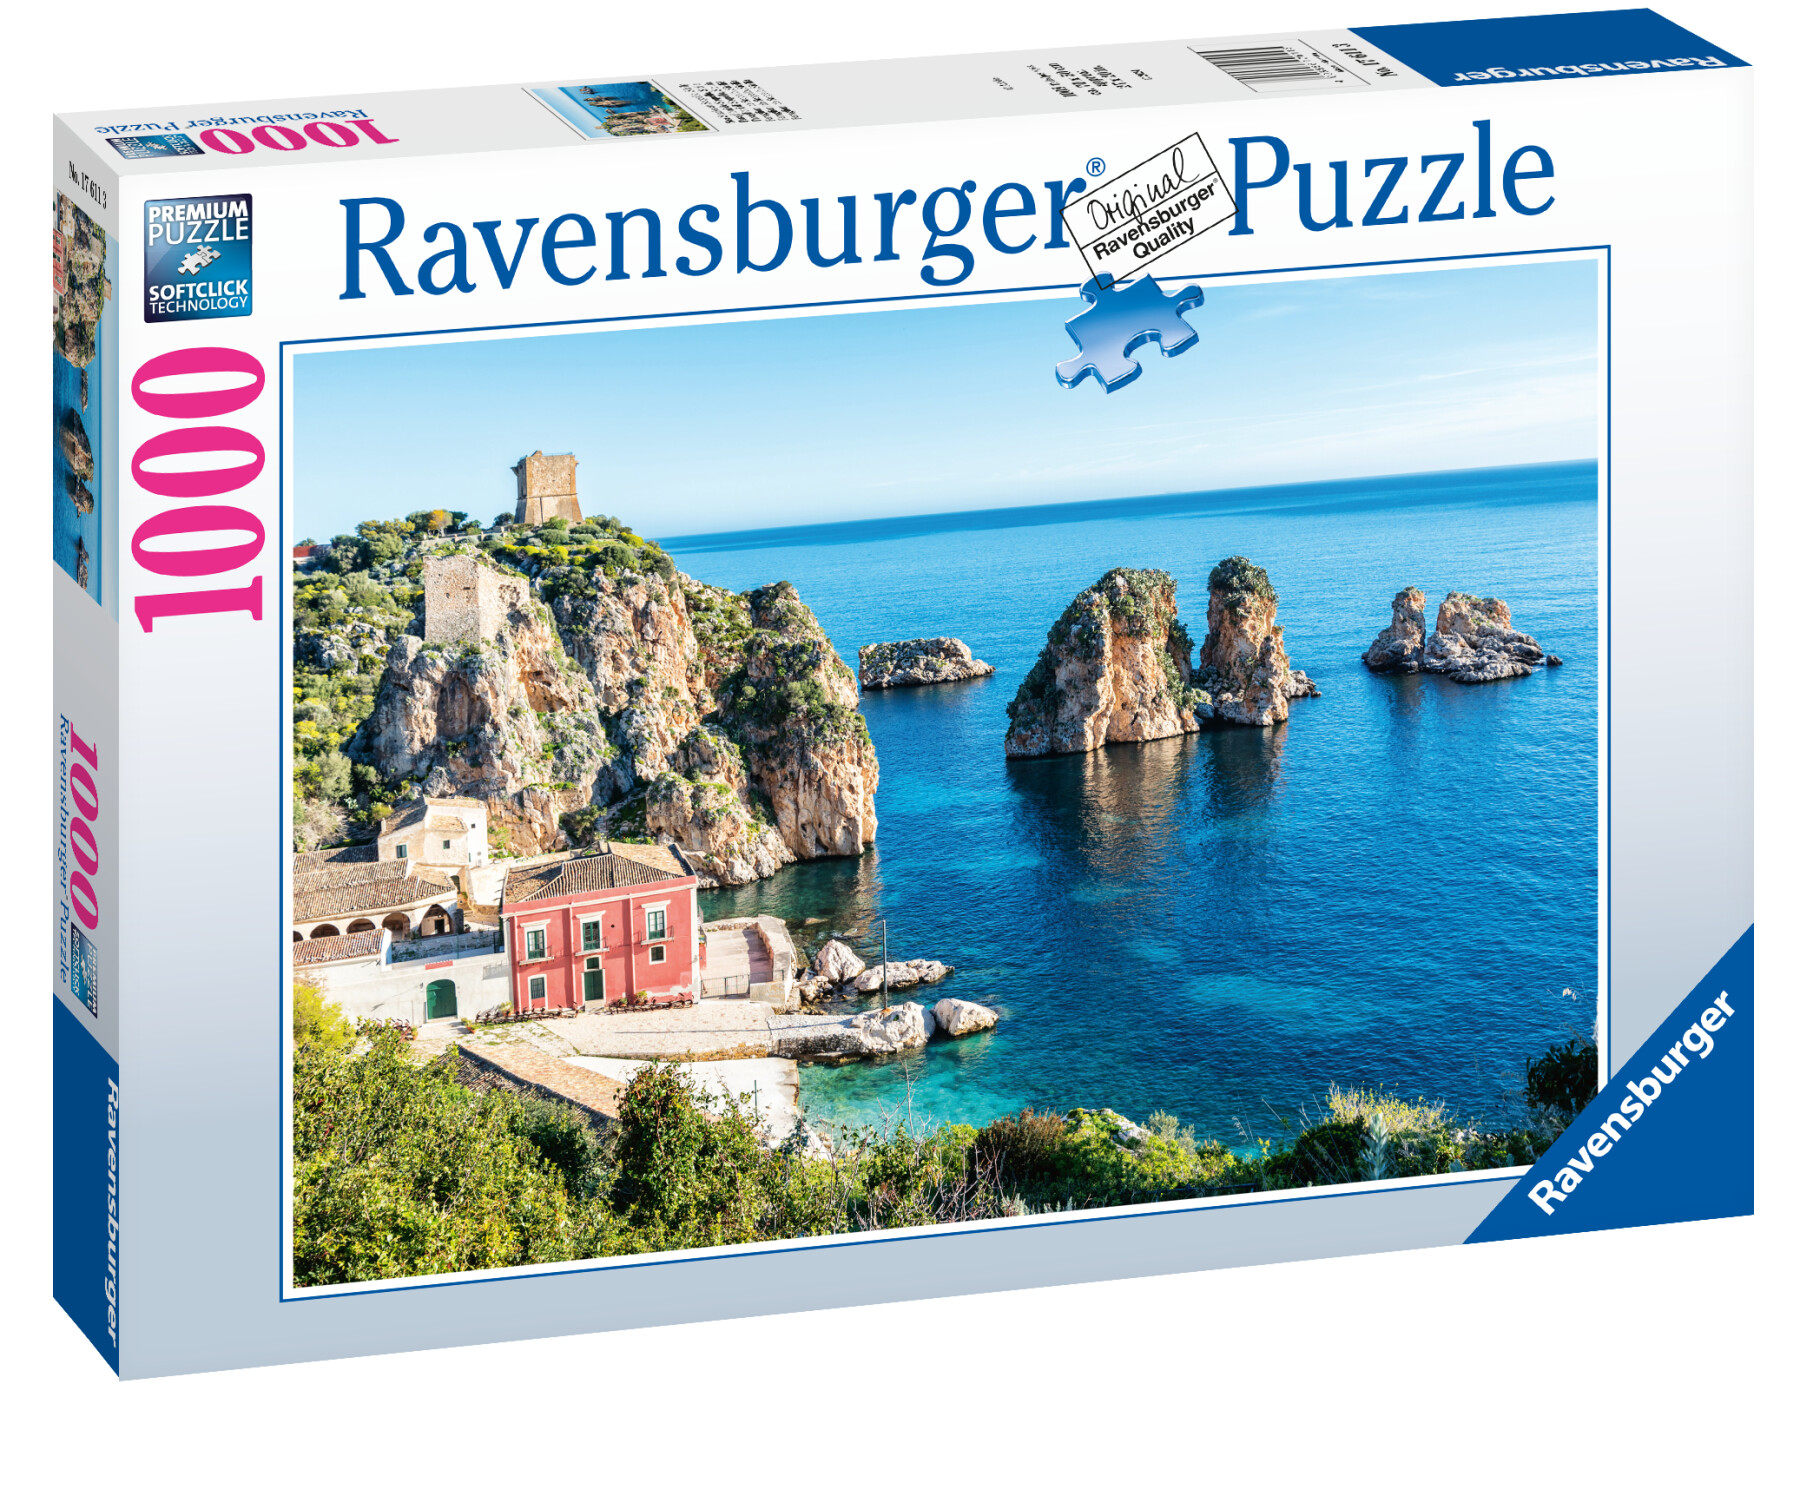 Ravensburger - puzzle faraglioni di scopello, sicilia, 1000 pezzi, puzzle adulti - RAVENSBURGER